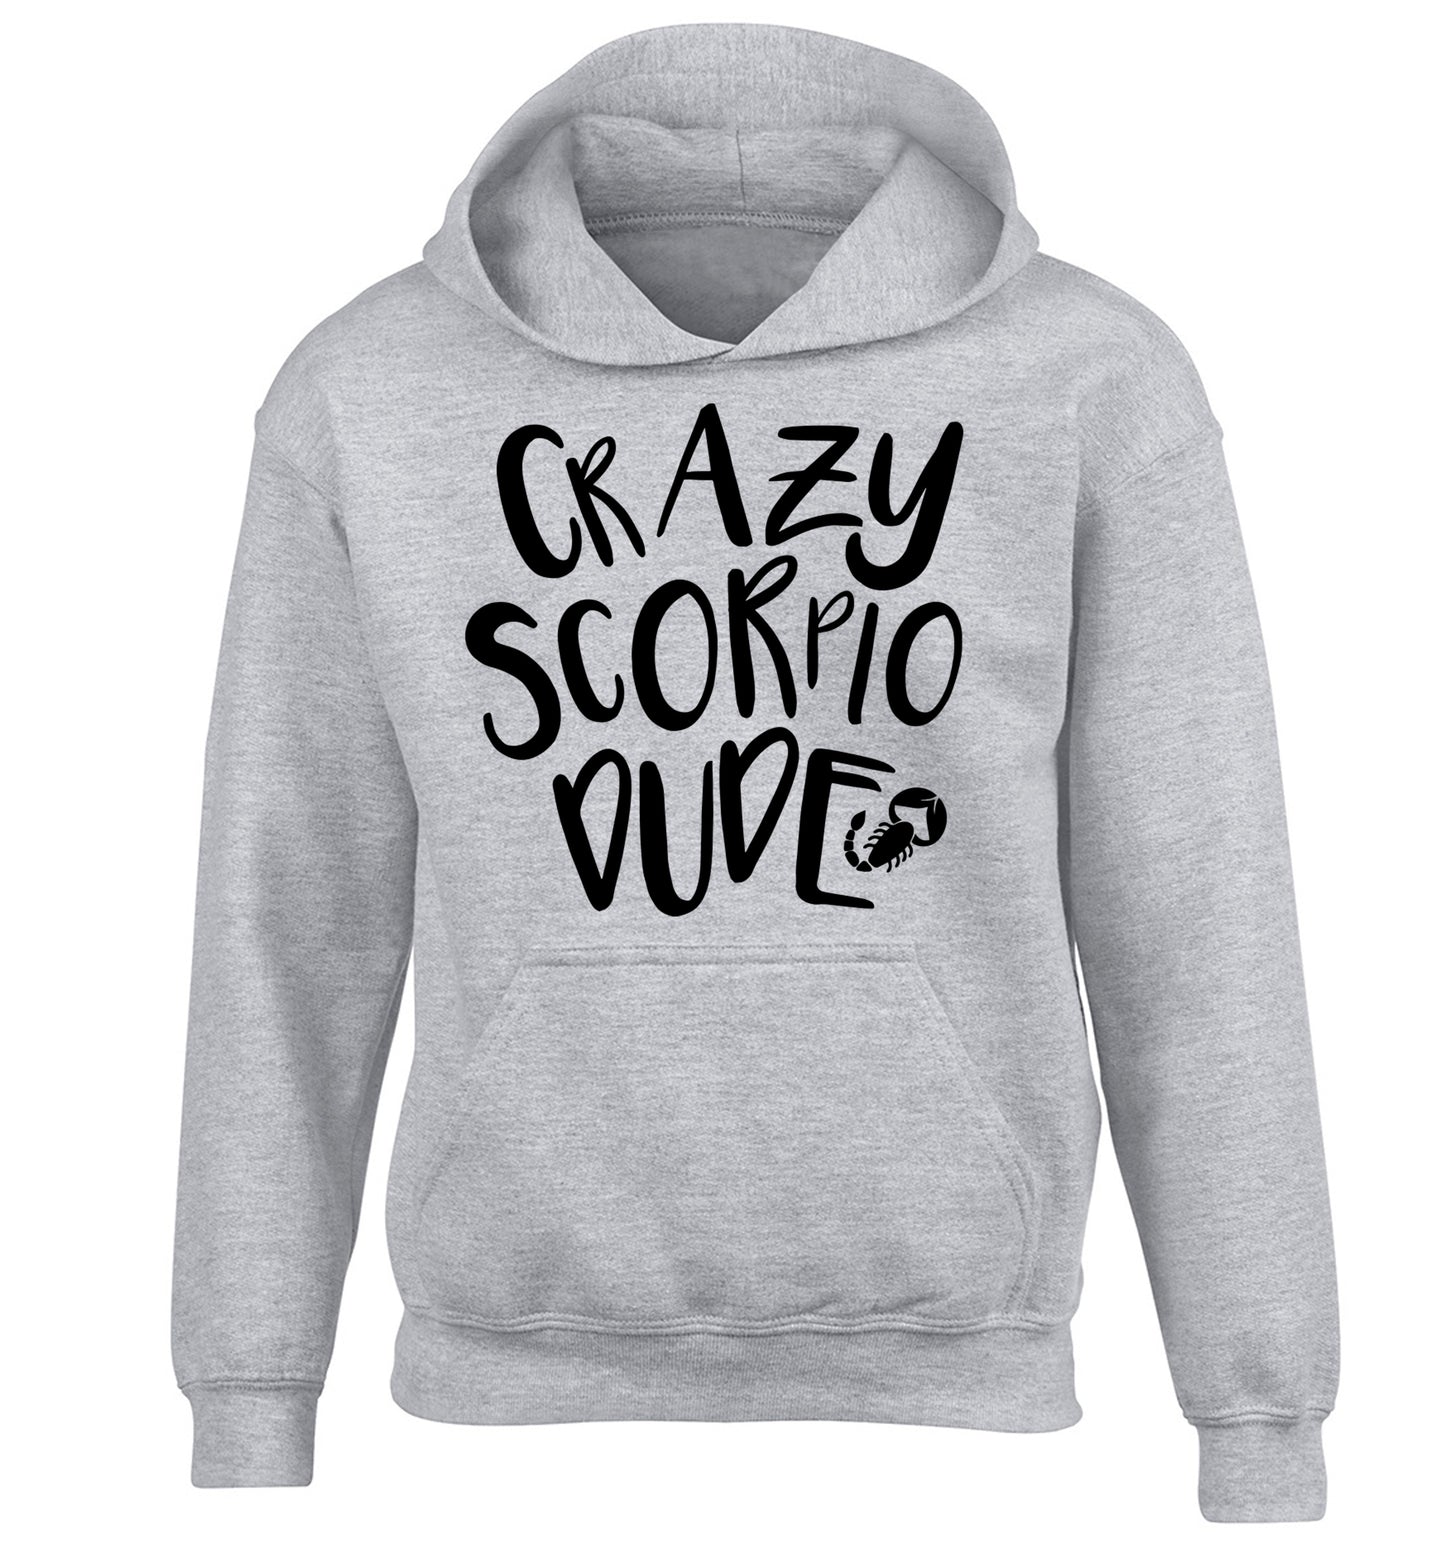 Crazy scorpio dude children's grey hoodie 12-13 Years